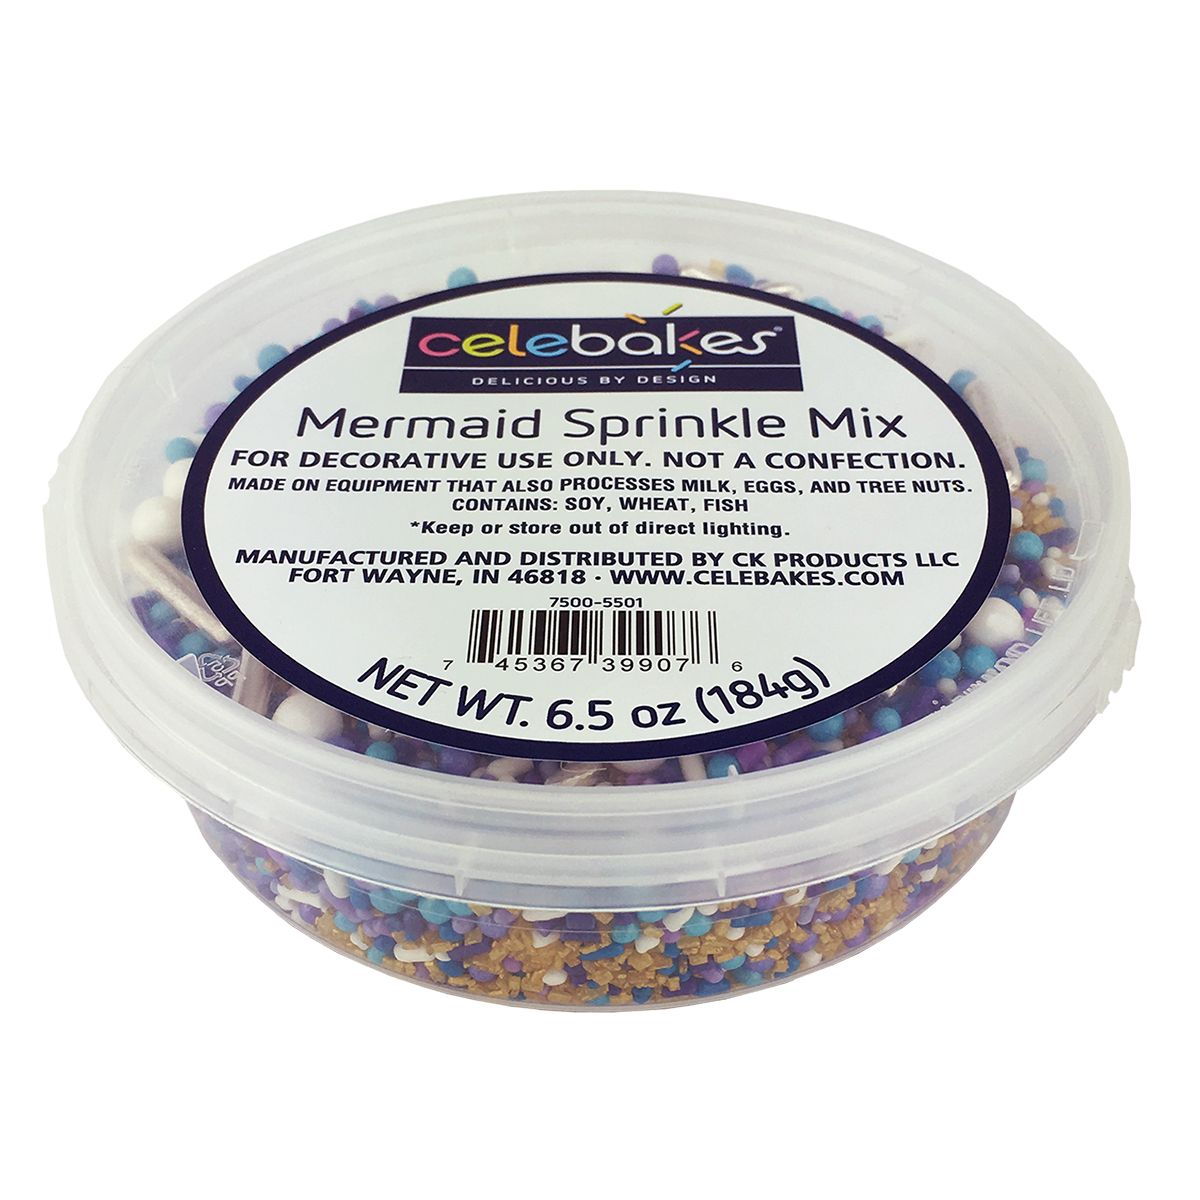 Mermaid Sprinkle Mix